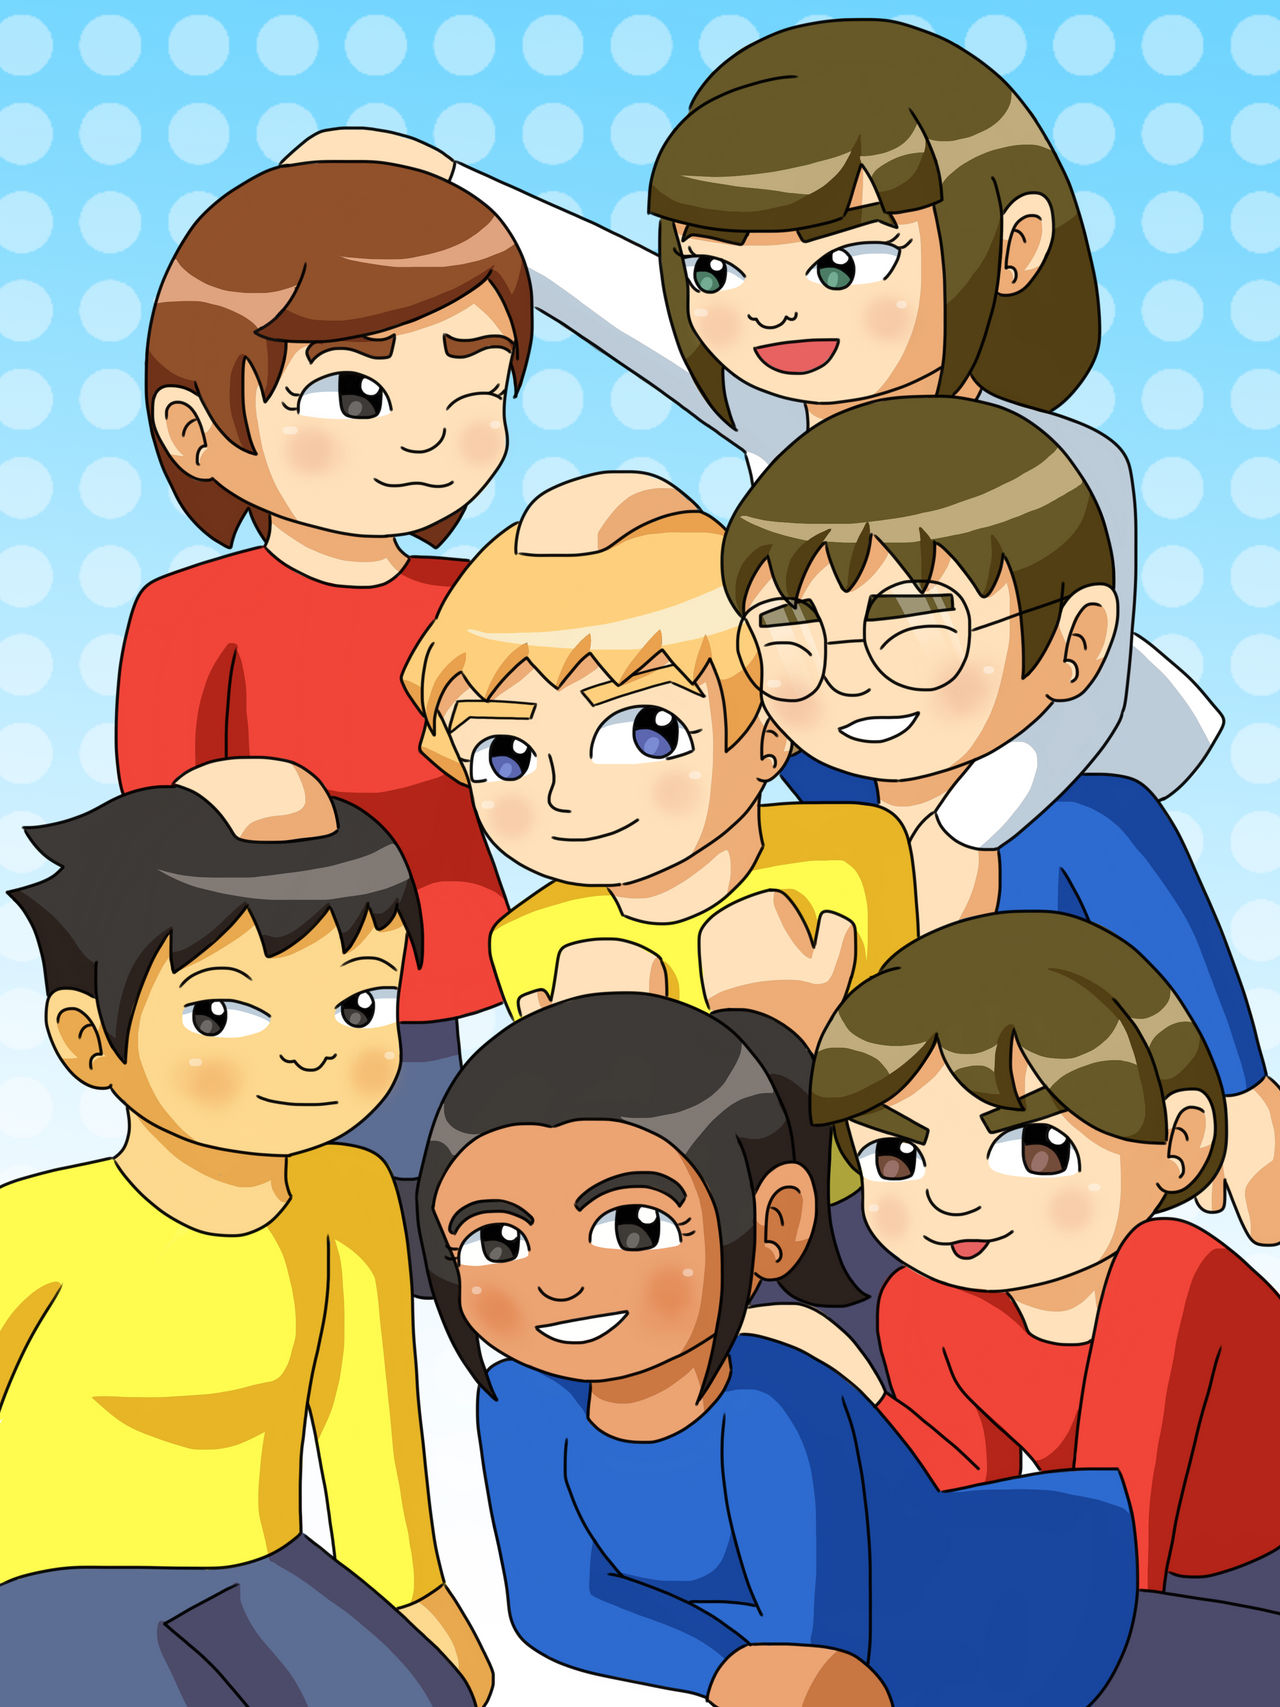 Wii sports club kids by Mageka on DeviantArt